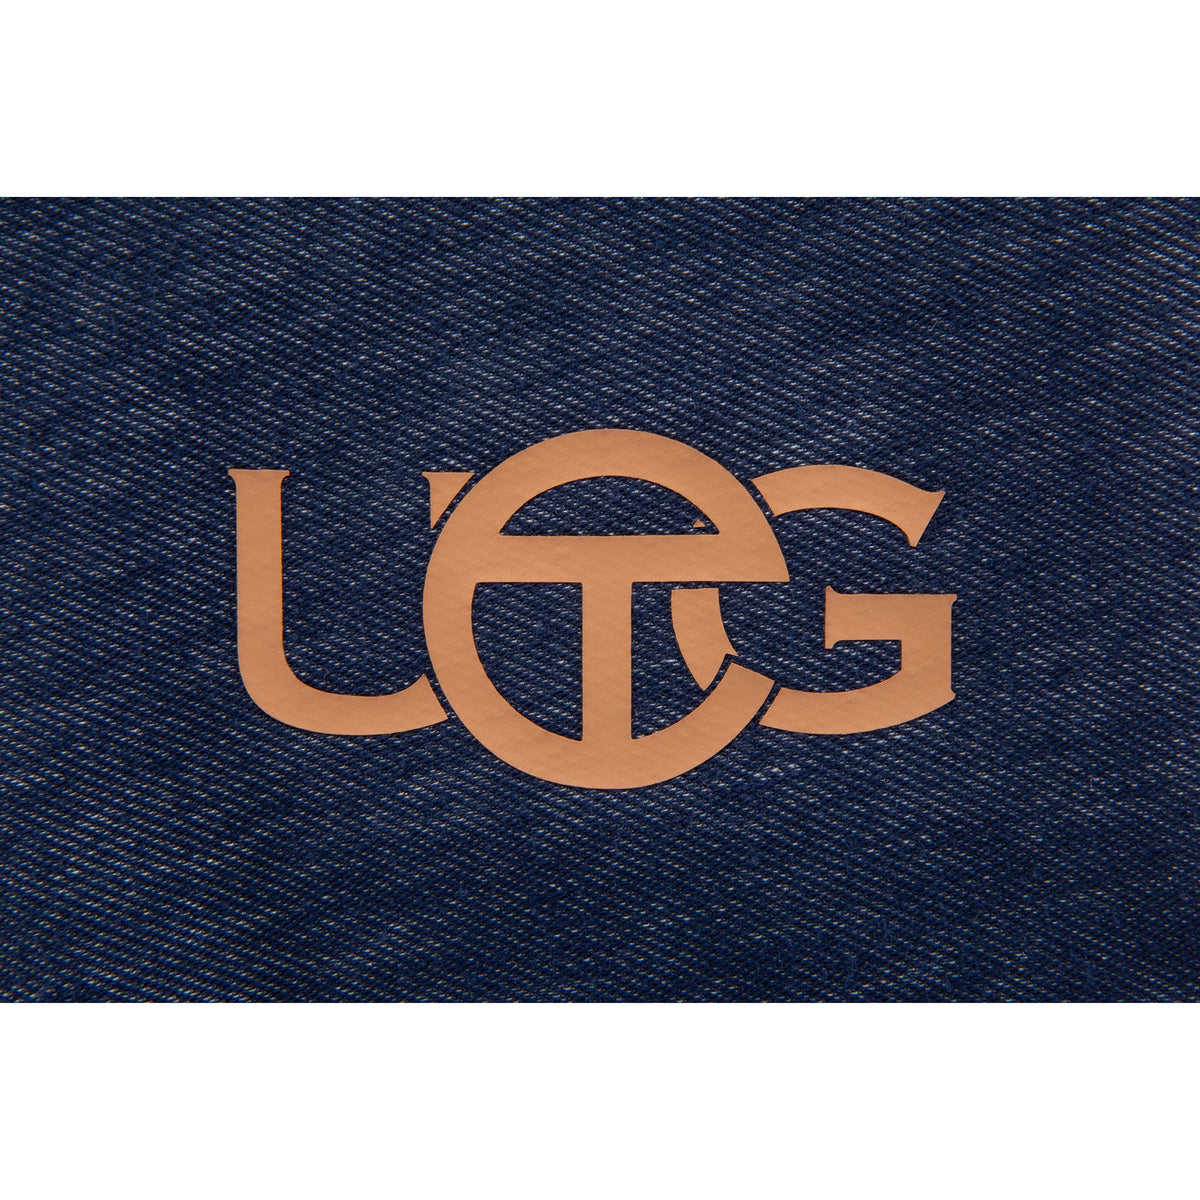 UGG X TELFAR Logo Tee - Denim